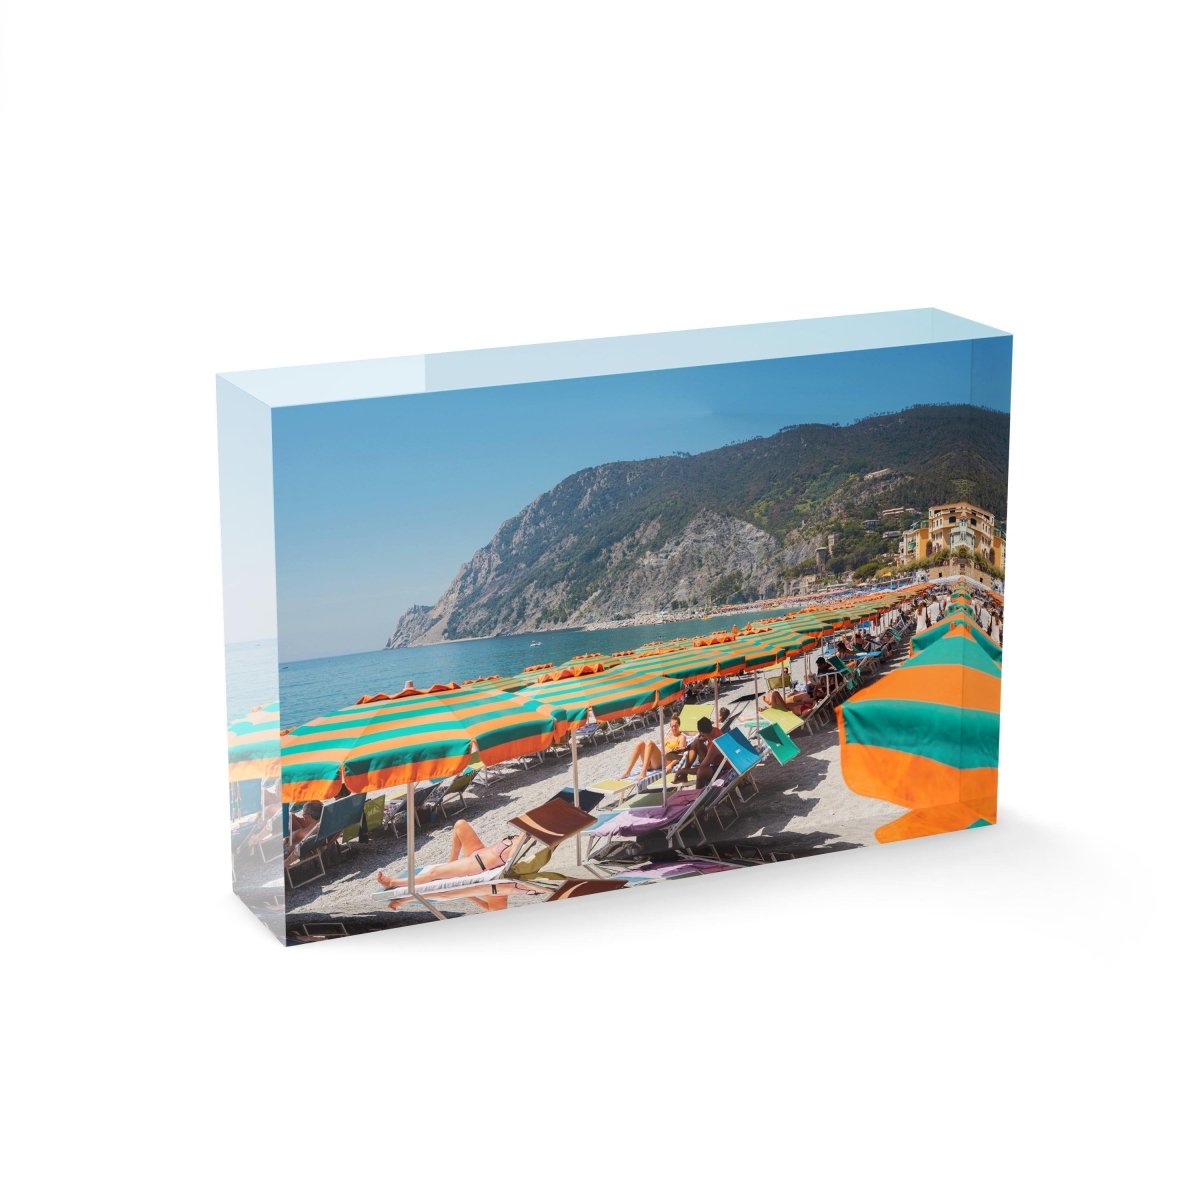 Orange umbrellas and people tanning on Monterosso Beach Cinque Terre